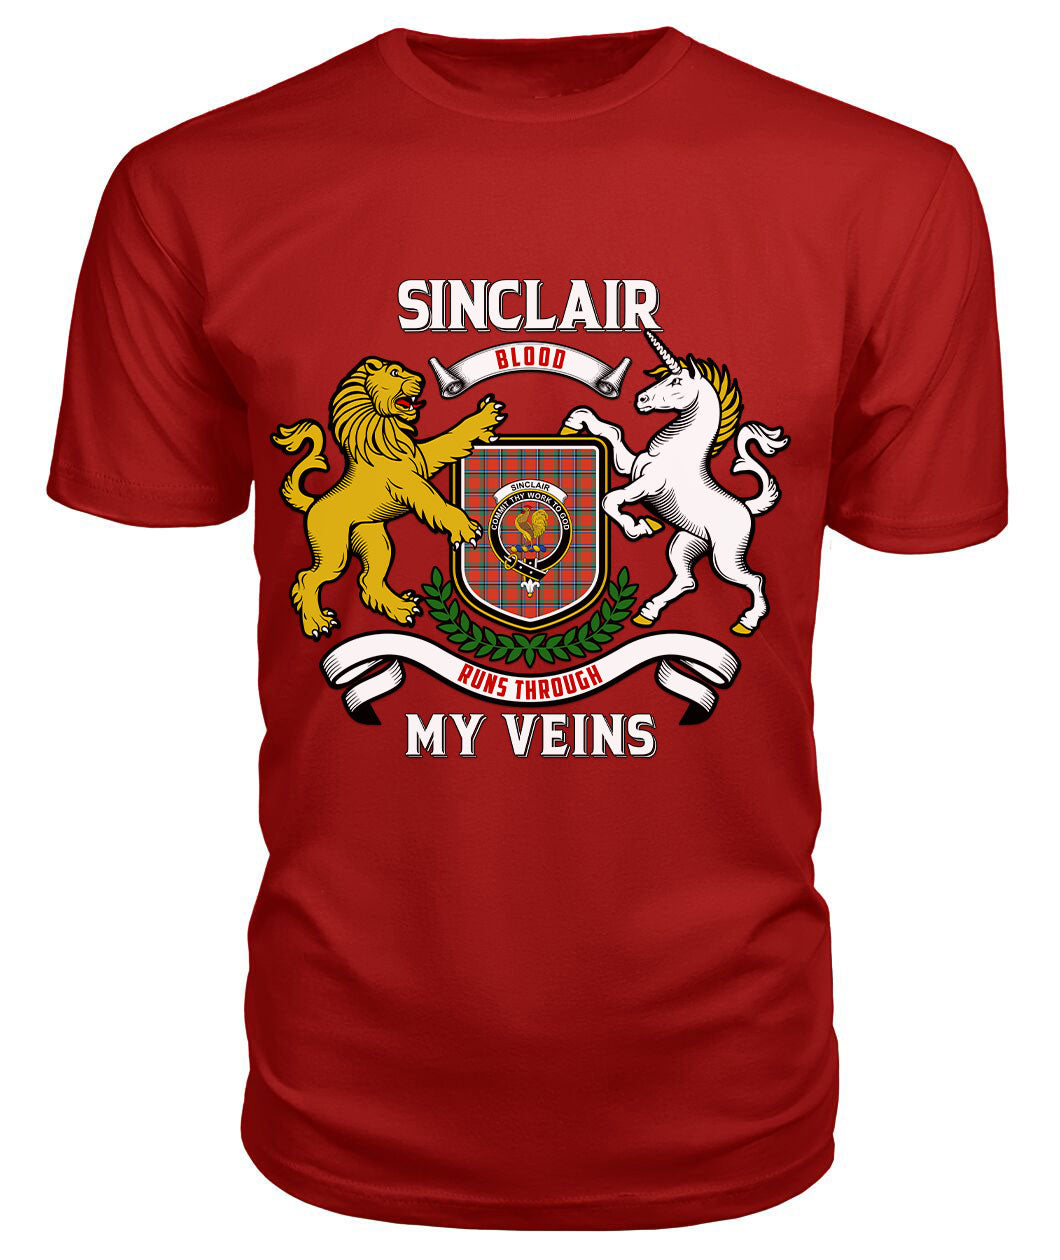 Sinclair Ancient Tartan Crest 2D T-shirt - Blood Runs Through My Veins Style